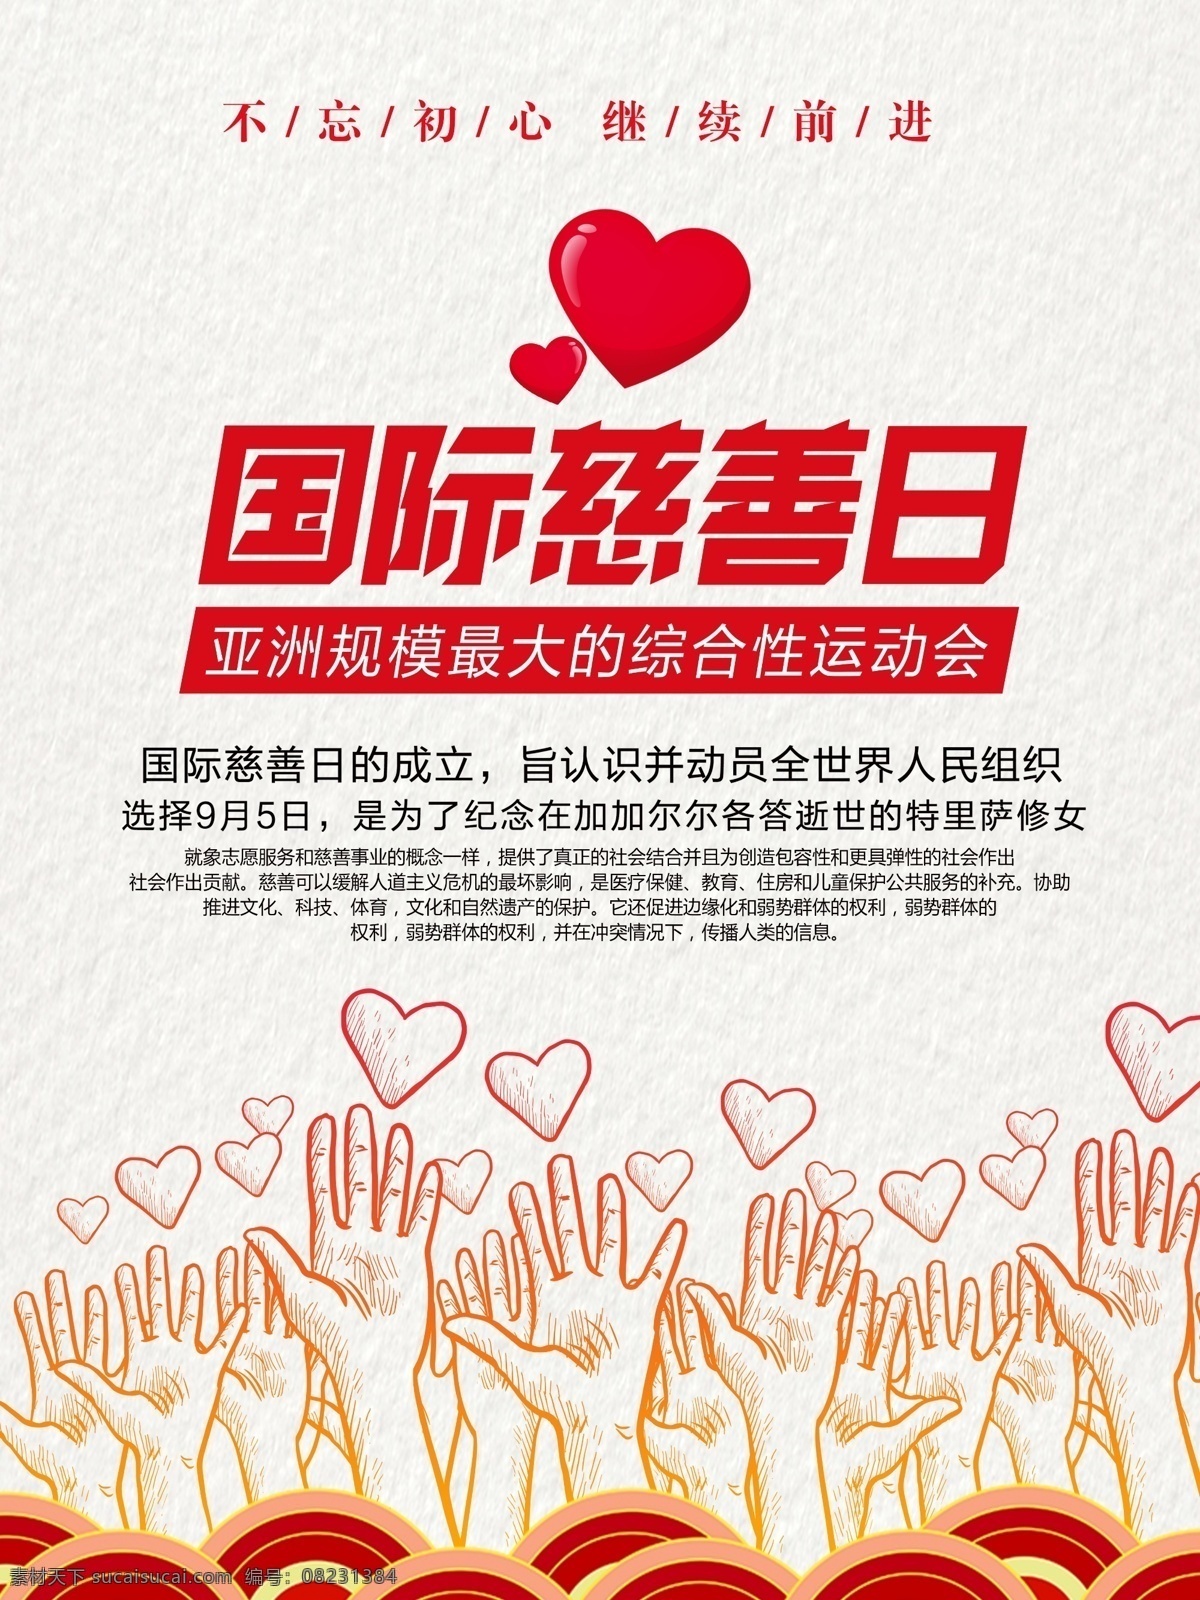 国际慈善日 不忘初心 牢记使命 手势 爱心 波纹 手绘 扁平化 底纹 肌理 合作运动会 慈善事业 和谐中国